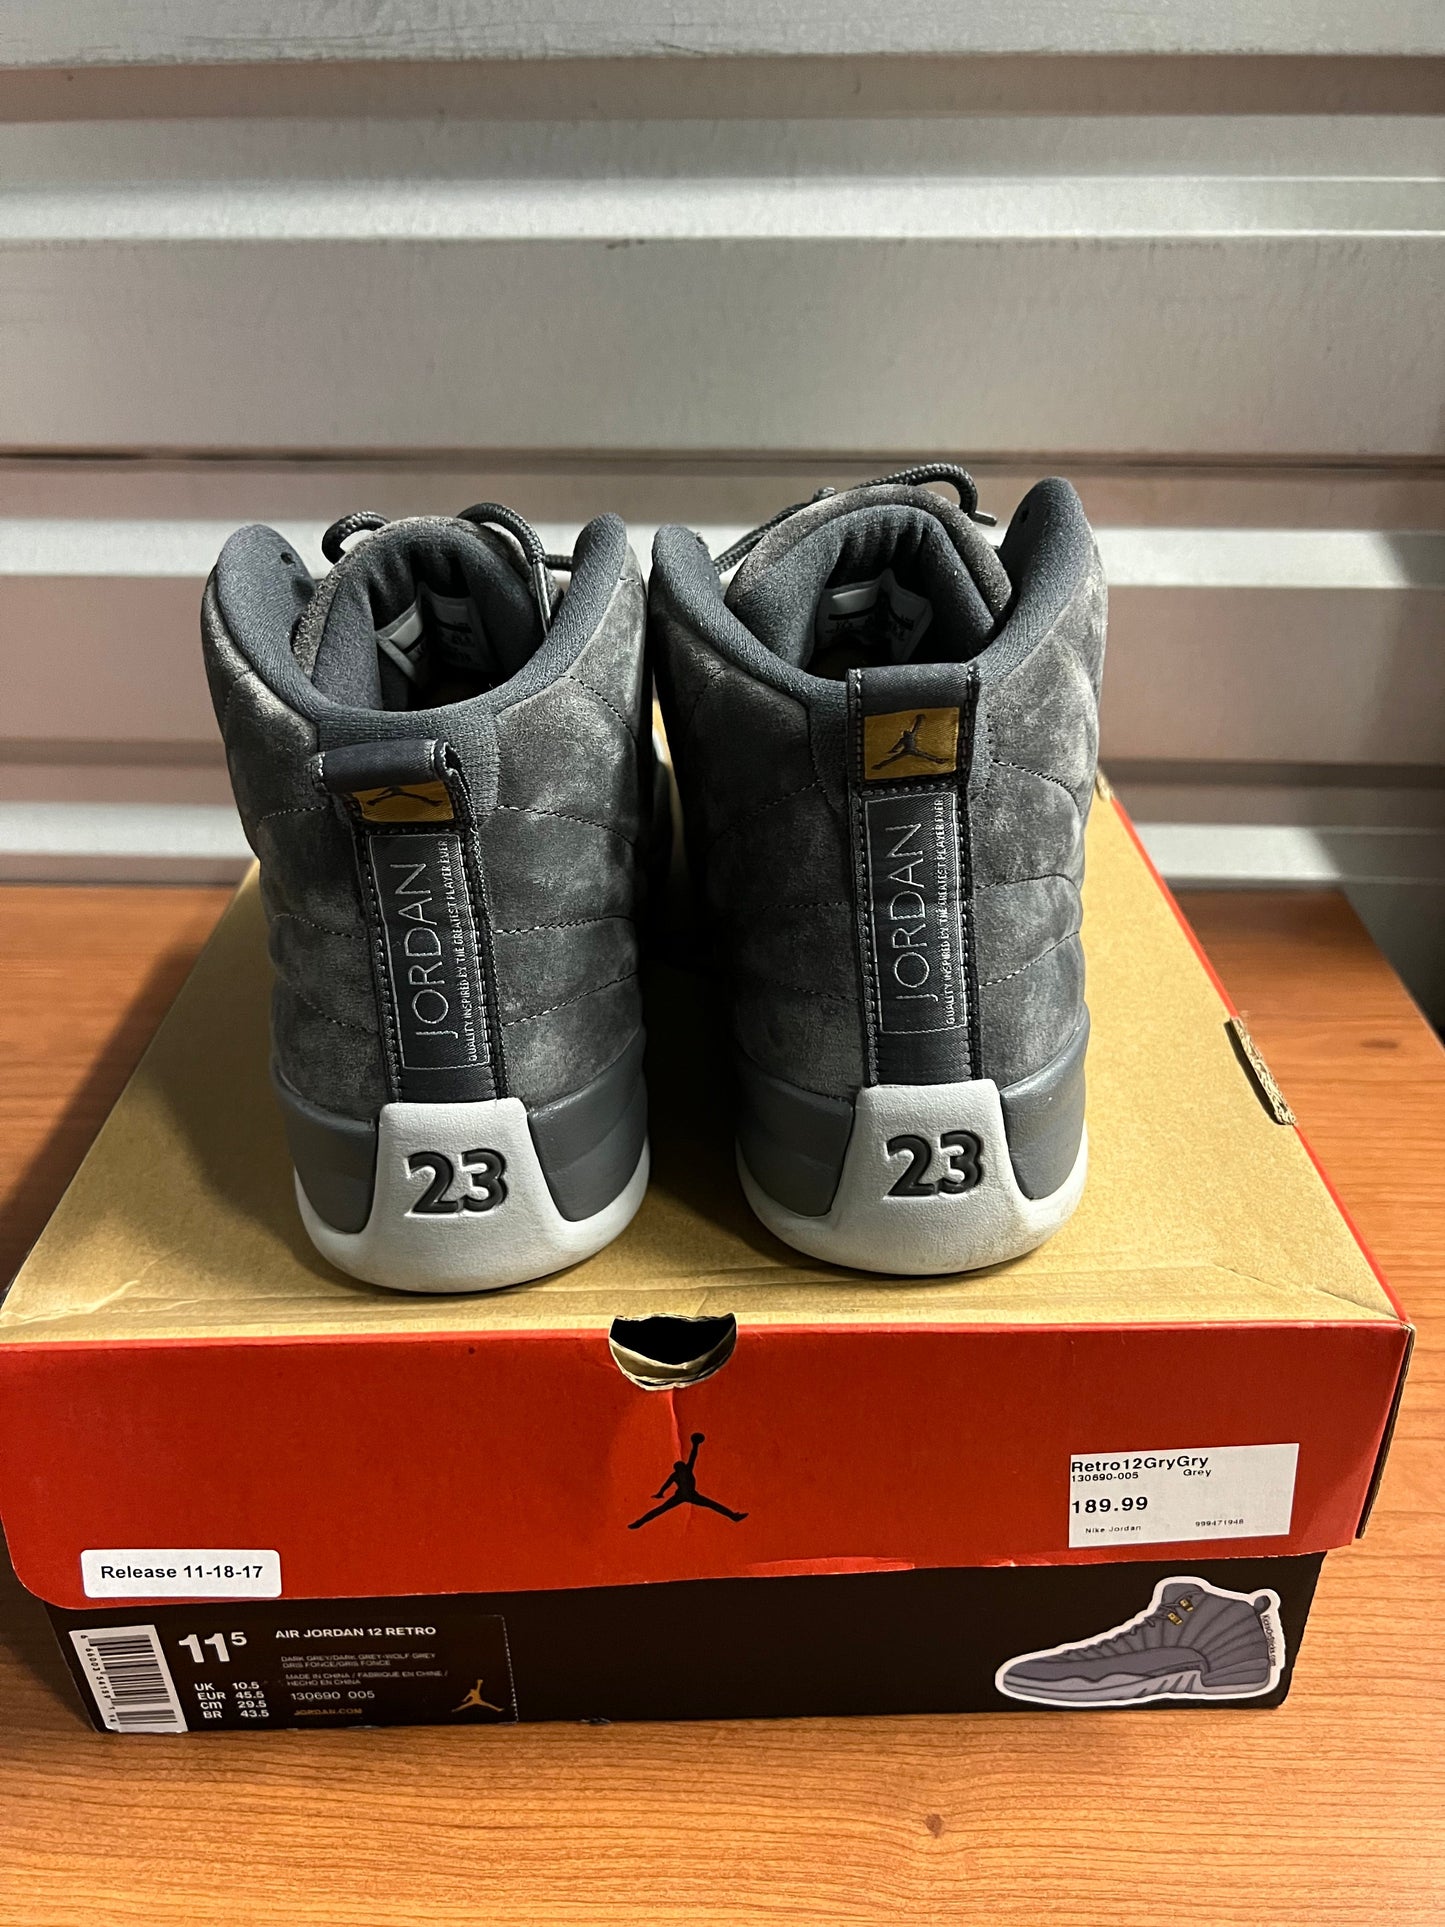 Jordan 12 "Dark Grey"